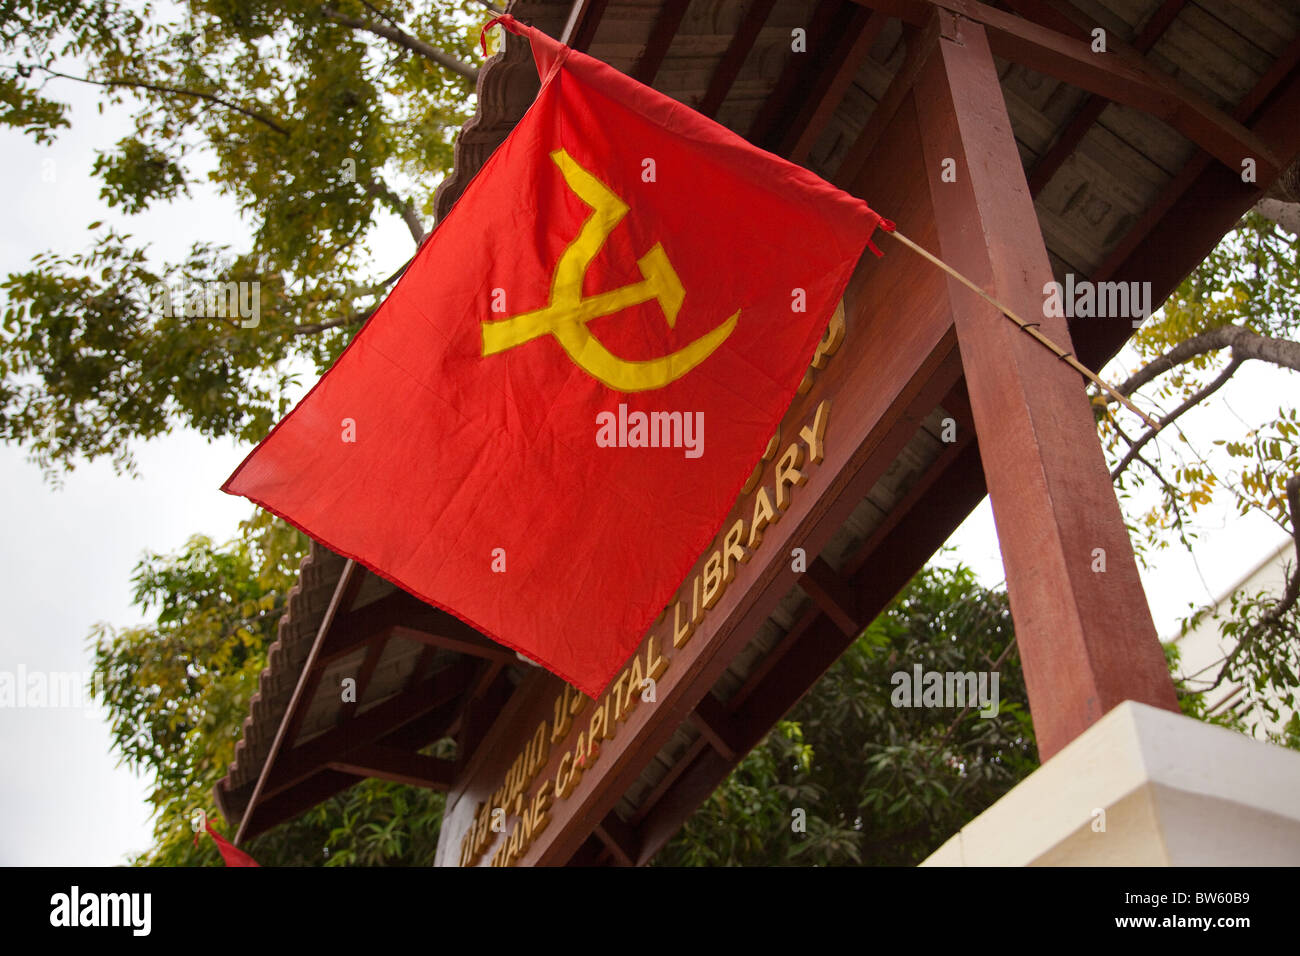 La falce e il martello bandiera del comunismo vola al cancello di Vientiane la libreria su Lane Xiang Avenue Foto Stock